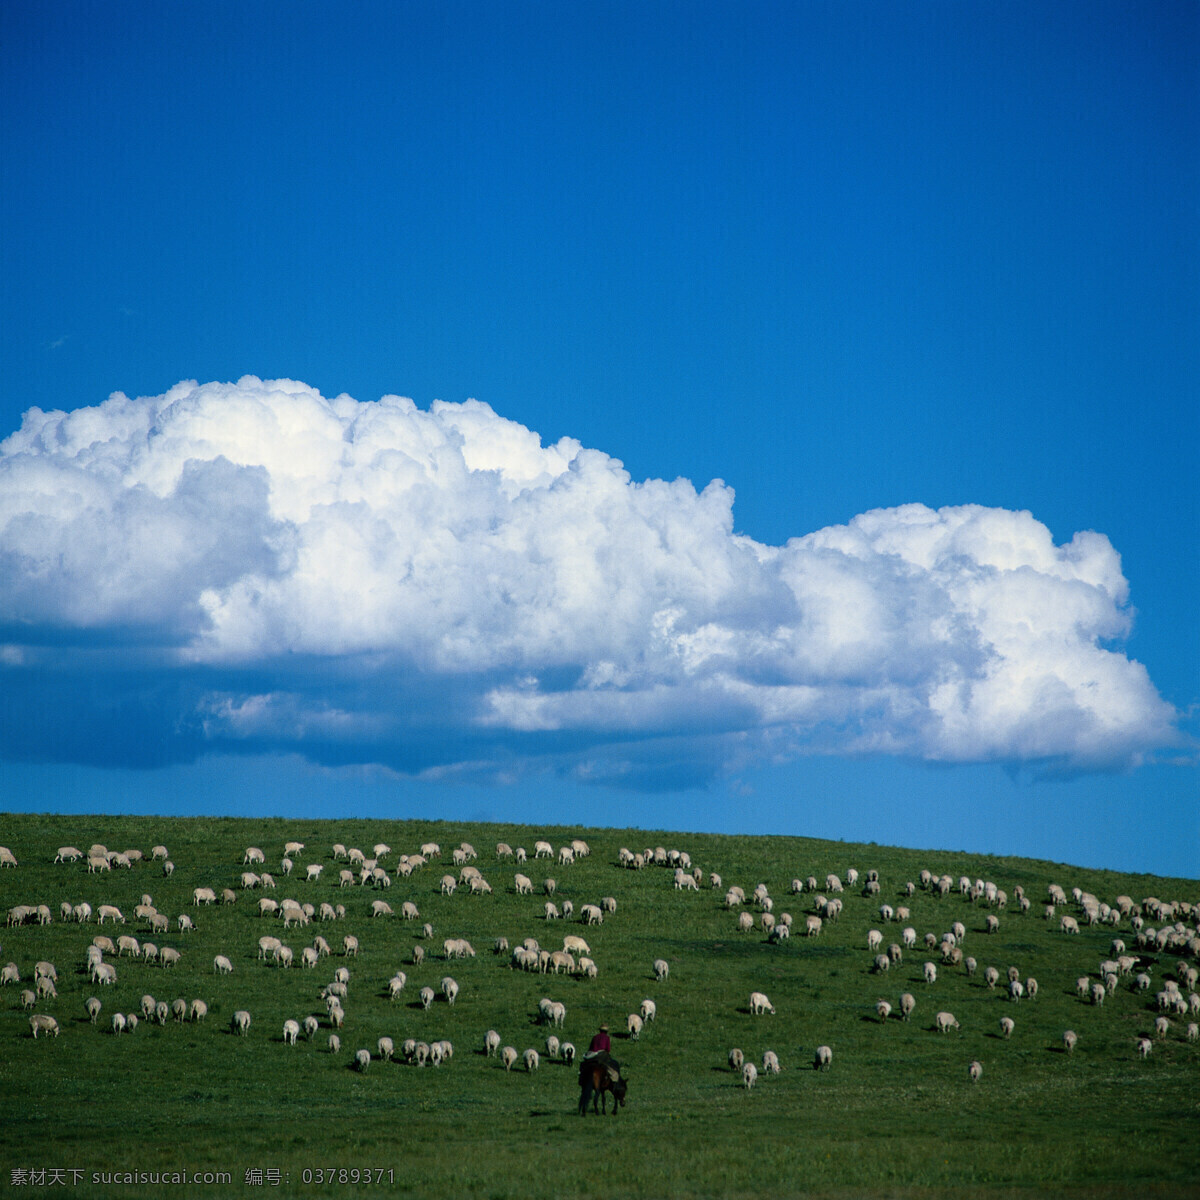 天空 蓝天 云彩 白云 草原 牛羊 自然景观 自然风景